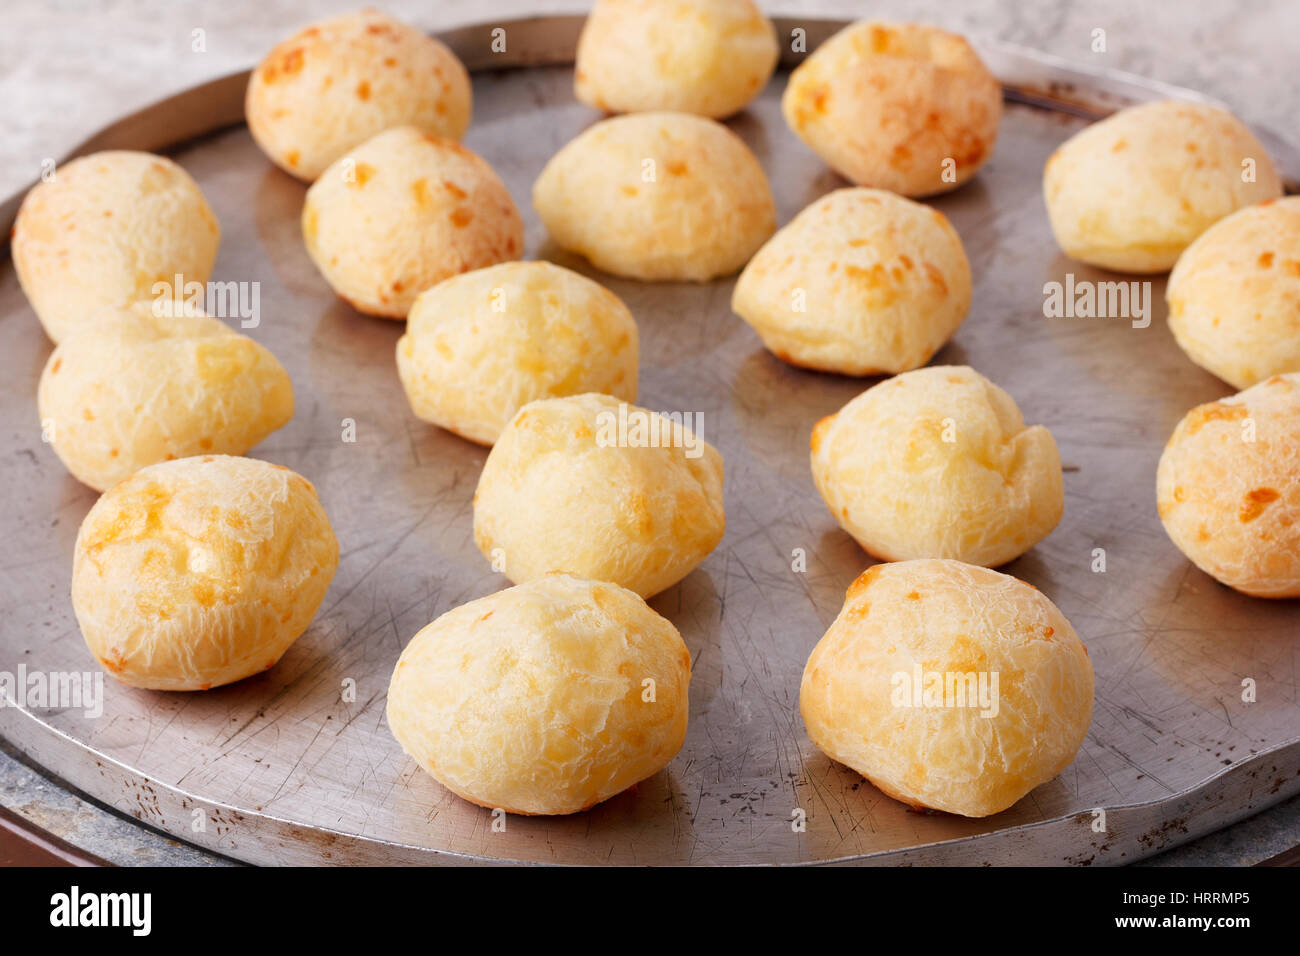 Cooking brazilian snack cheese bread (pao de queijo) on oven-tray. Selective focus Stock Photo